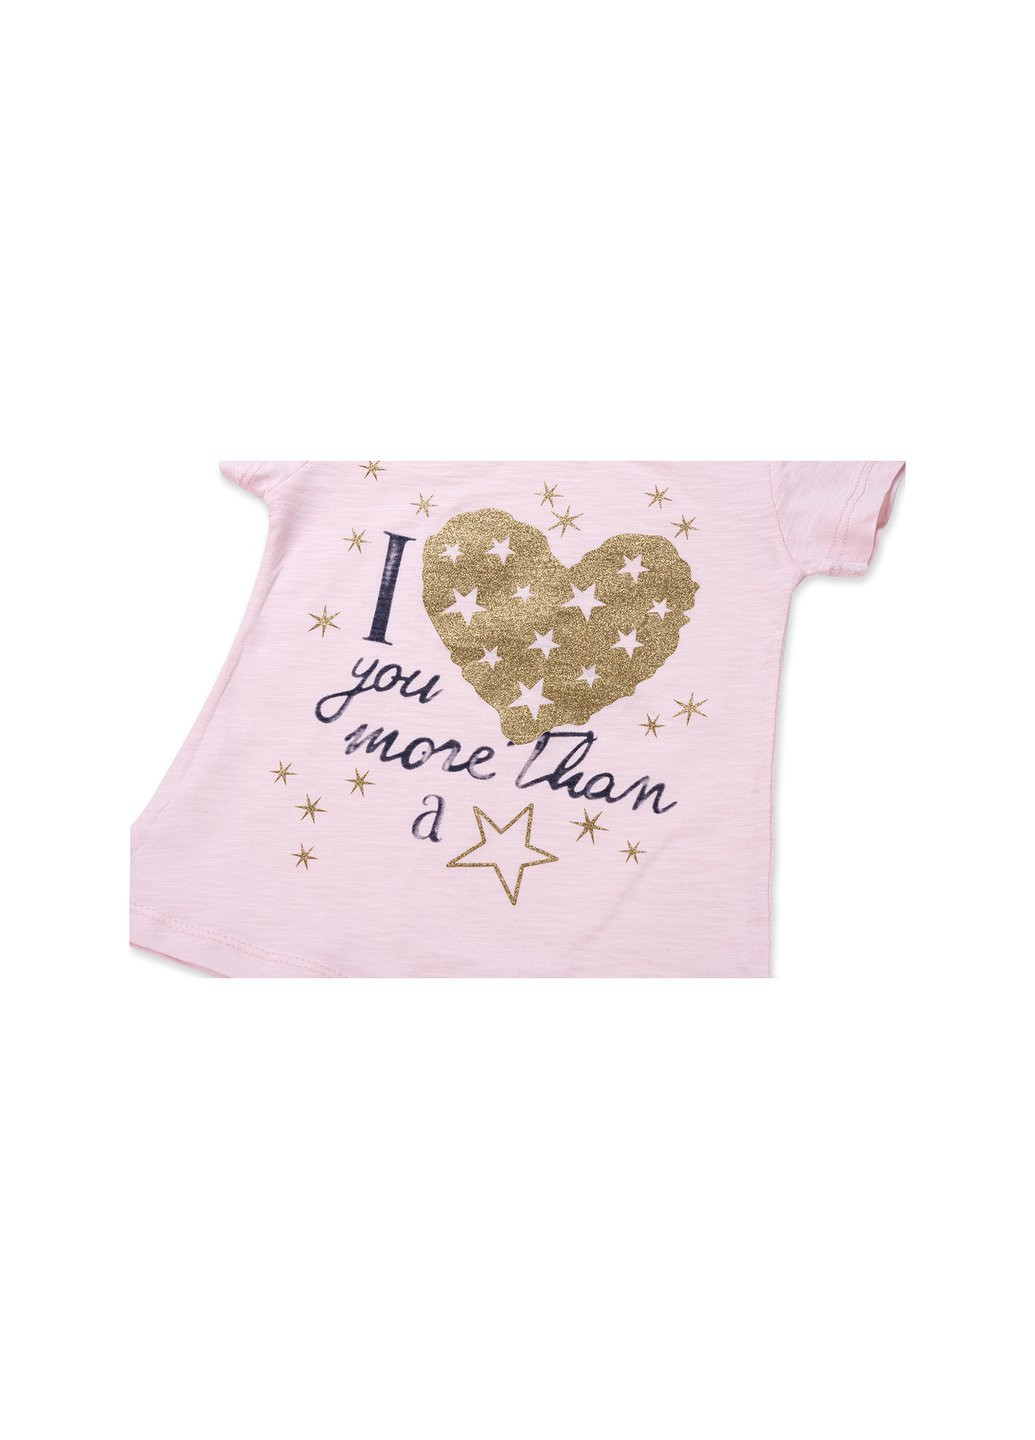 Комбінований літній набір дитячого одягу із золотим серцем (8735-92g-pink) Breeze